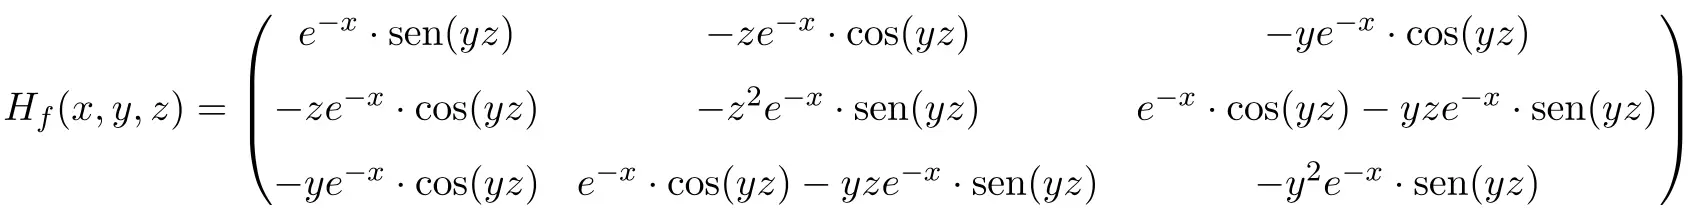 exemplo de serapilheira ou matriz de serapilheira de dimensão 3x3